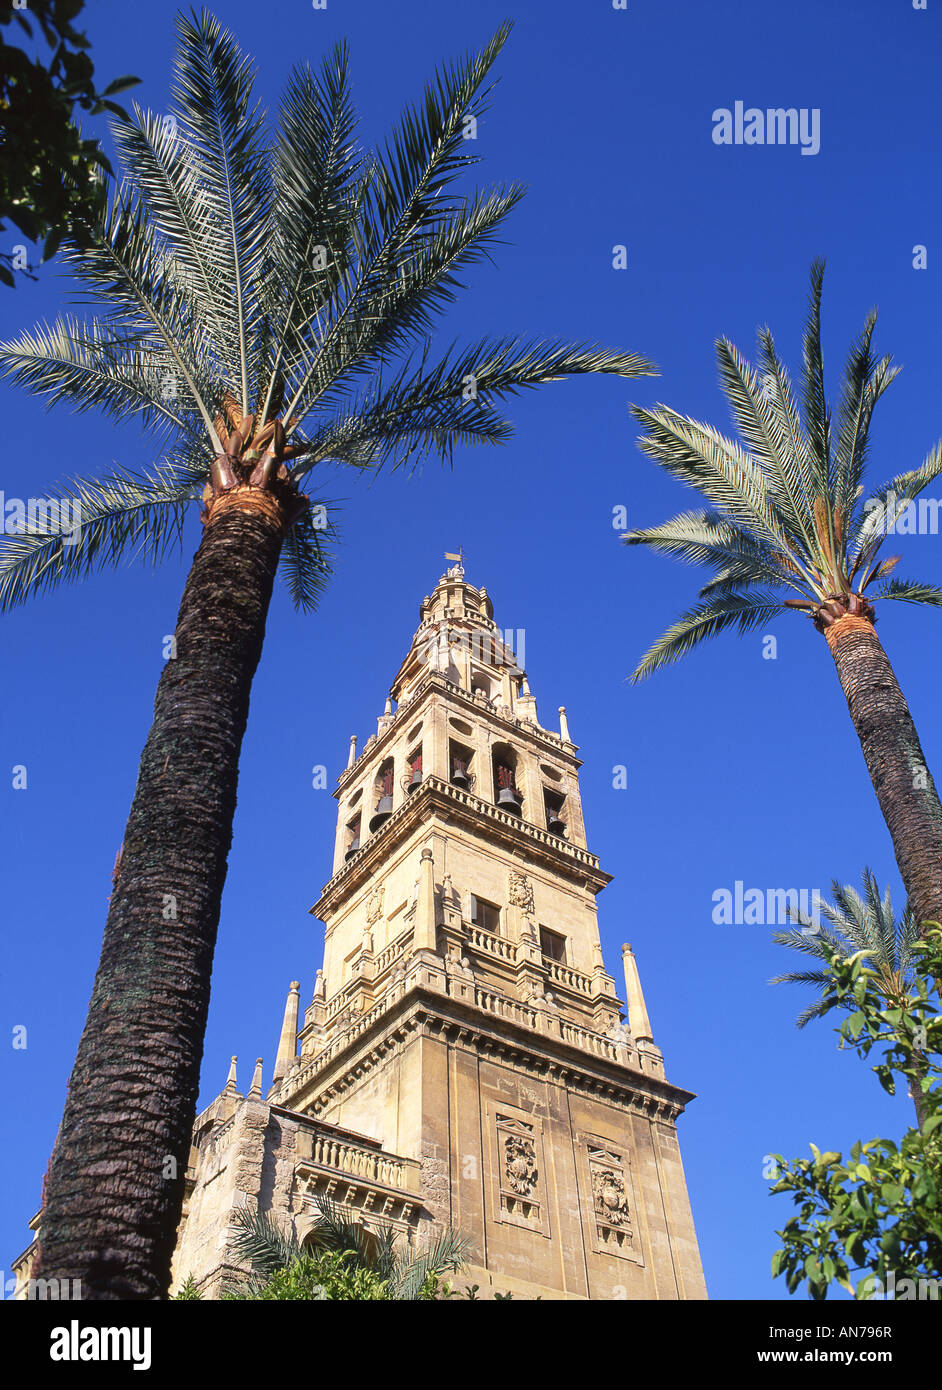 Glockenturm der Kathedrale Mezquita große Moschee gesehen durch Palmen Cordoba Andalusien Spanien Stockfoto